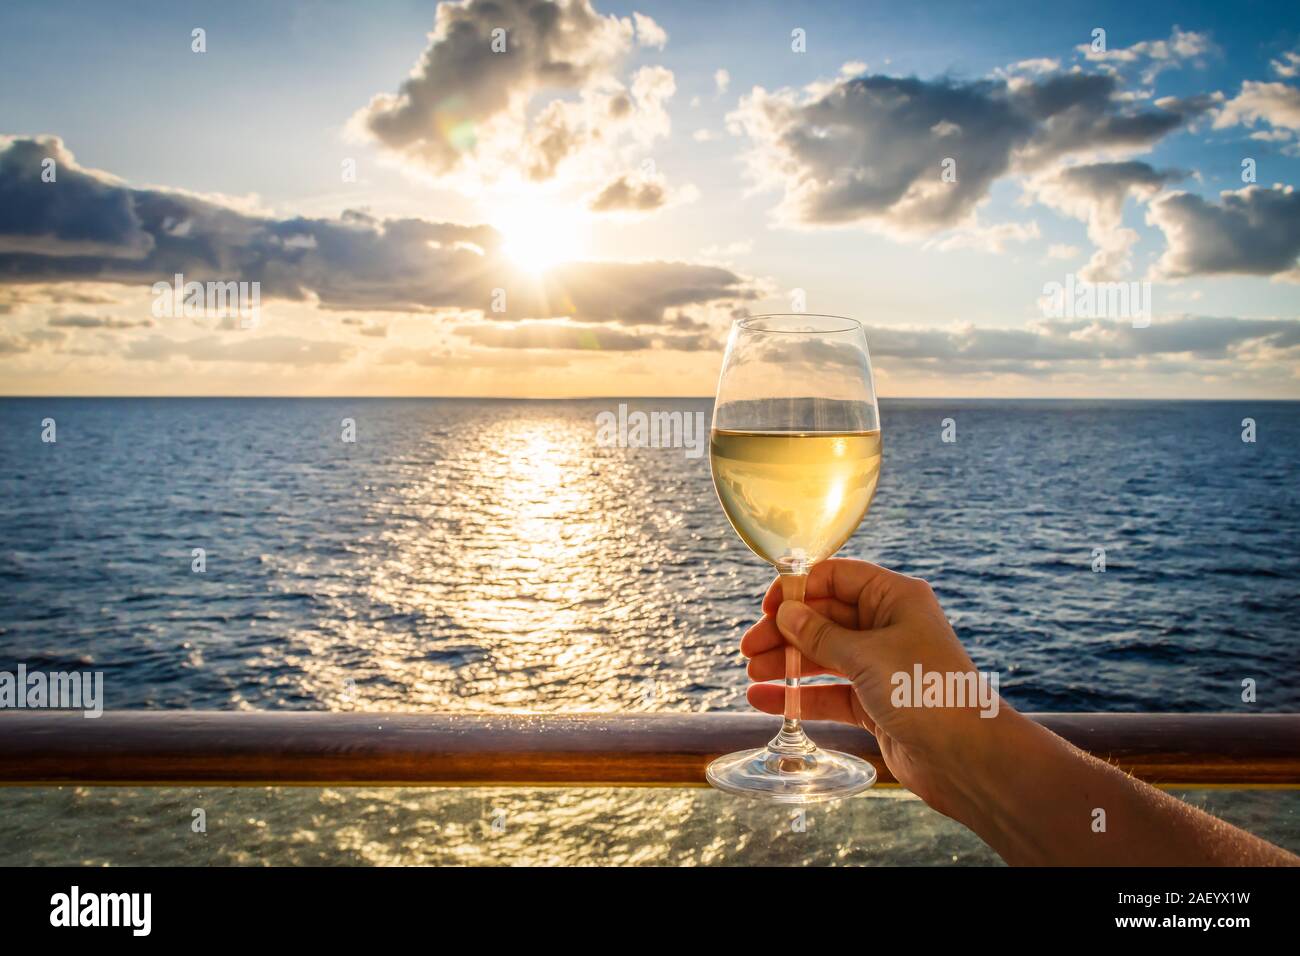 Pendant le coucher du soleil une femme part toasts la nouvelle année avec un verre de vin blanc. Photo prise sur un balcon d'un navire de croisière avec vue sur la mer. Banque D'Images